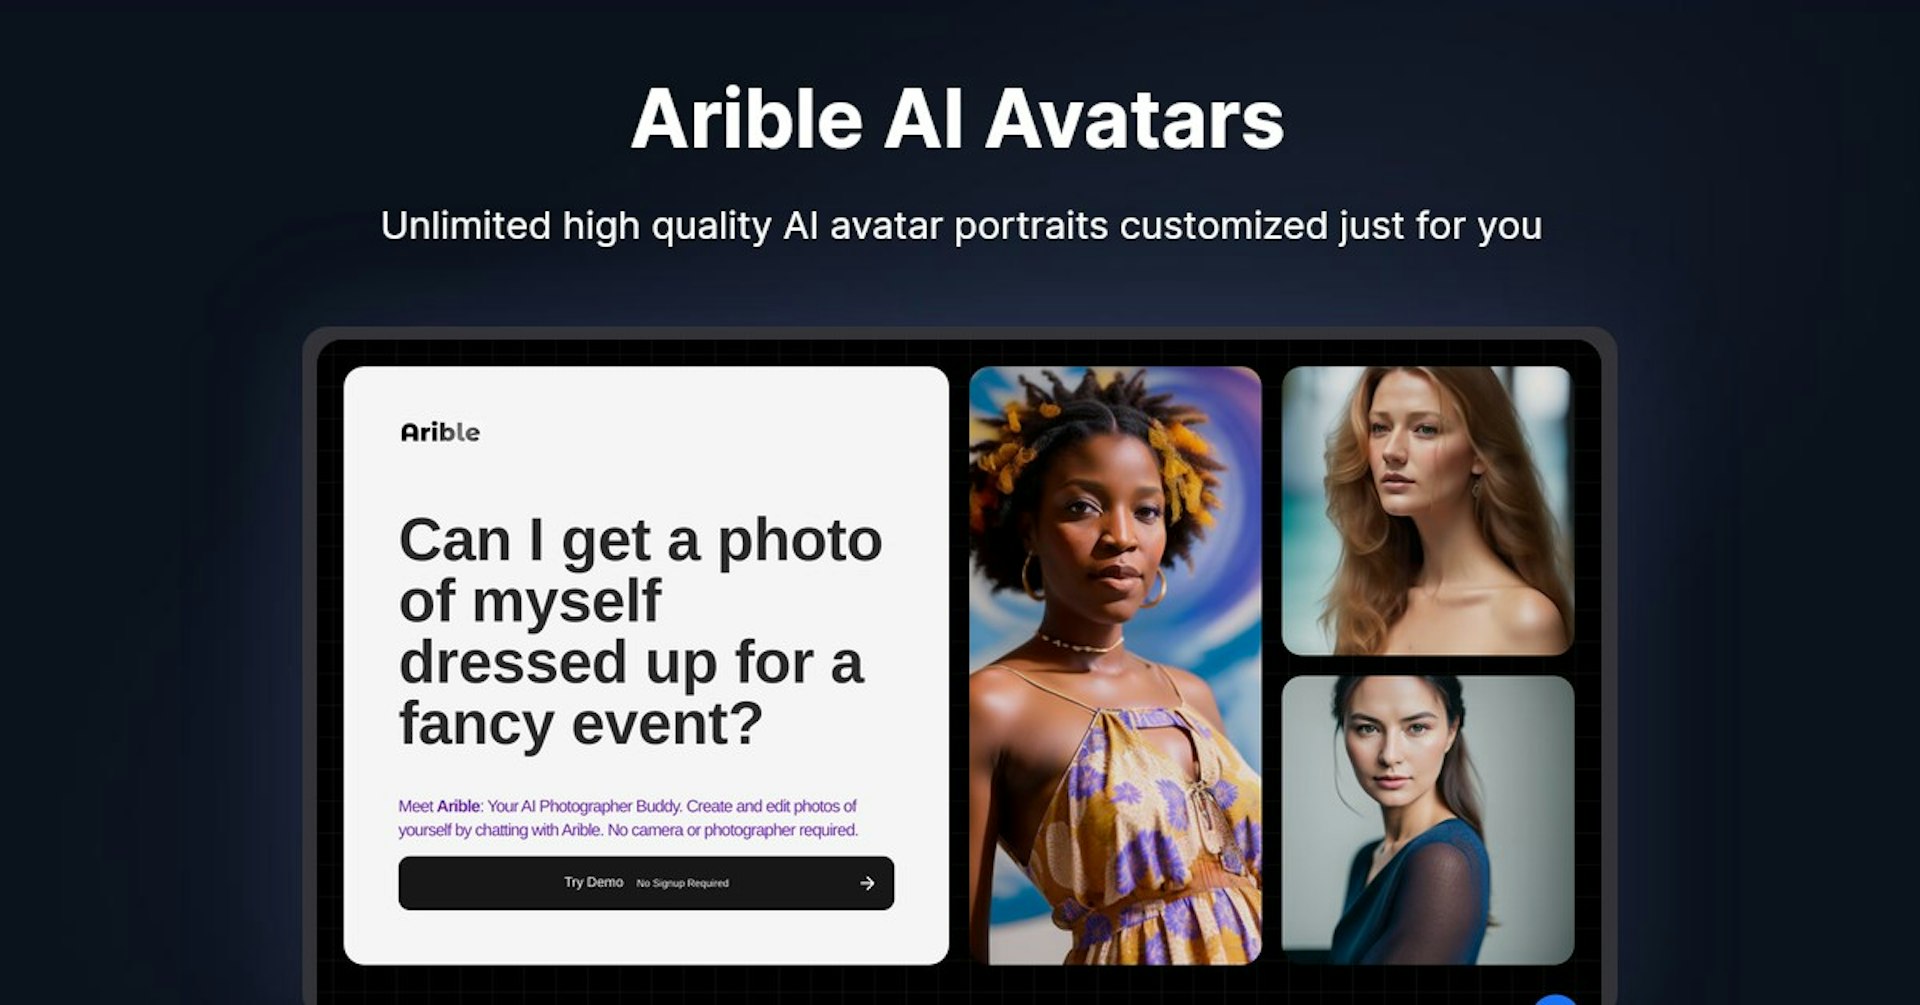 Arible AI Avatars